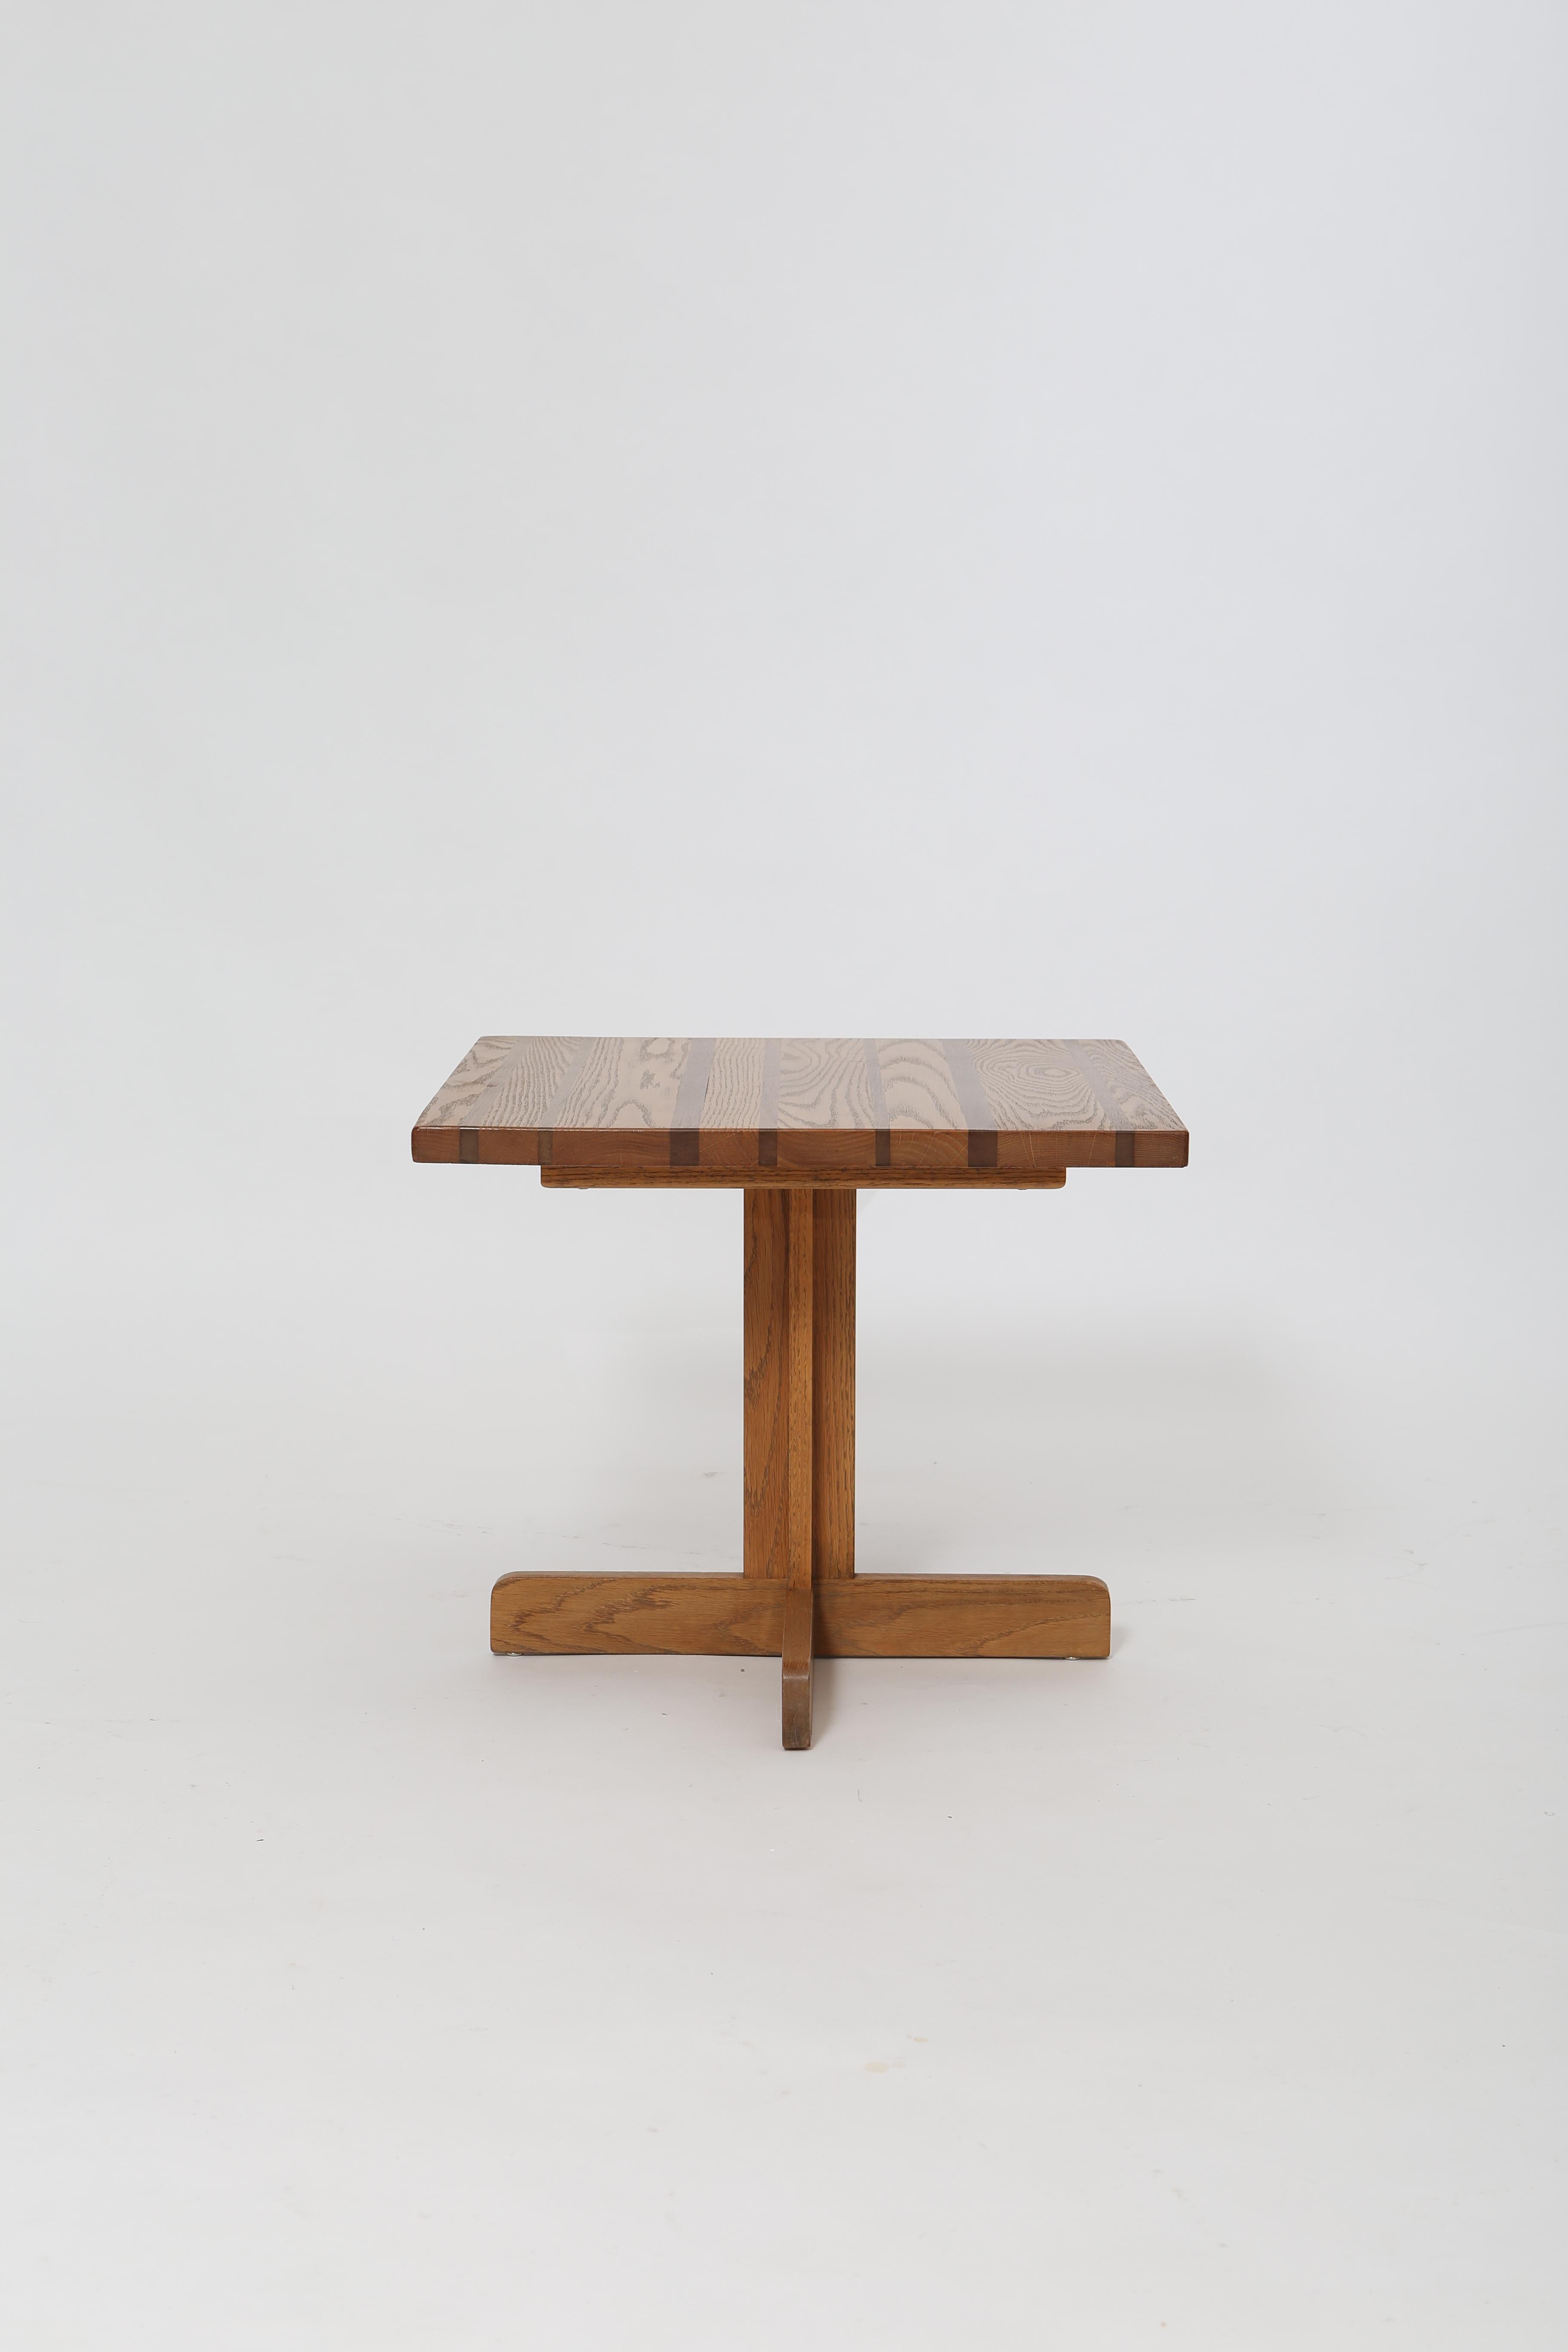 American Modernist Oak Side Table